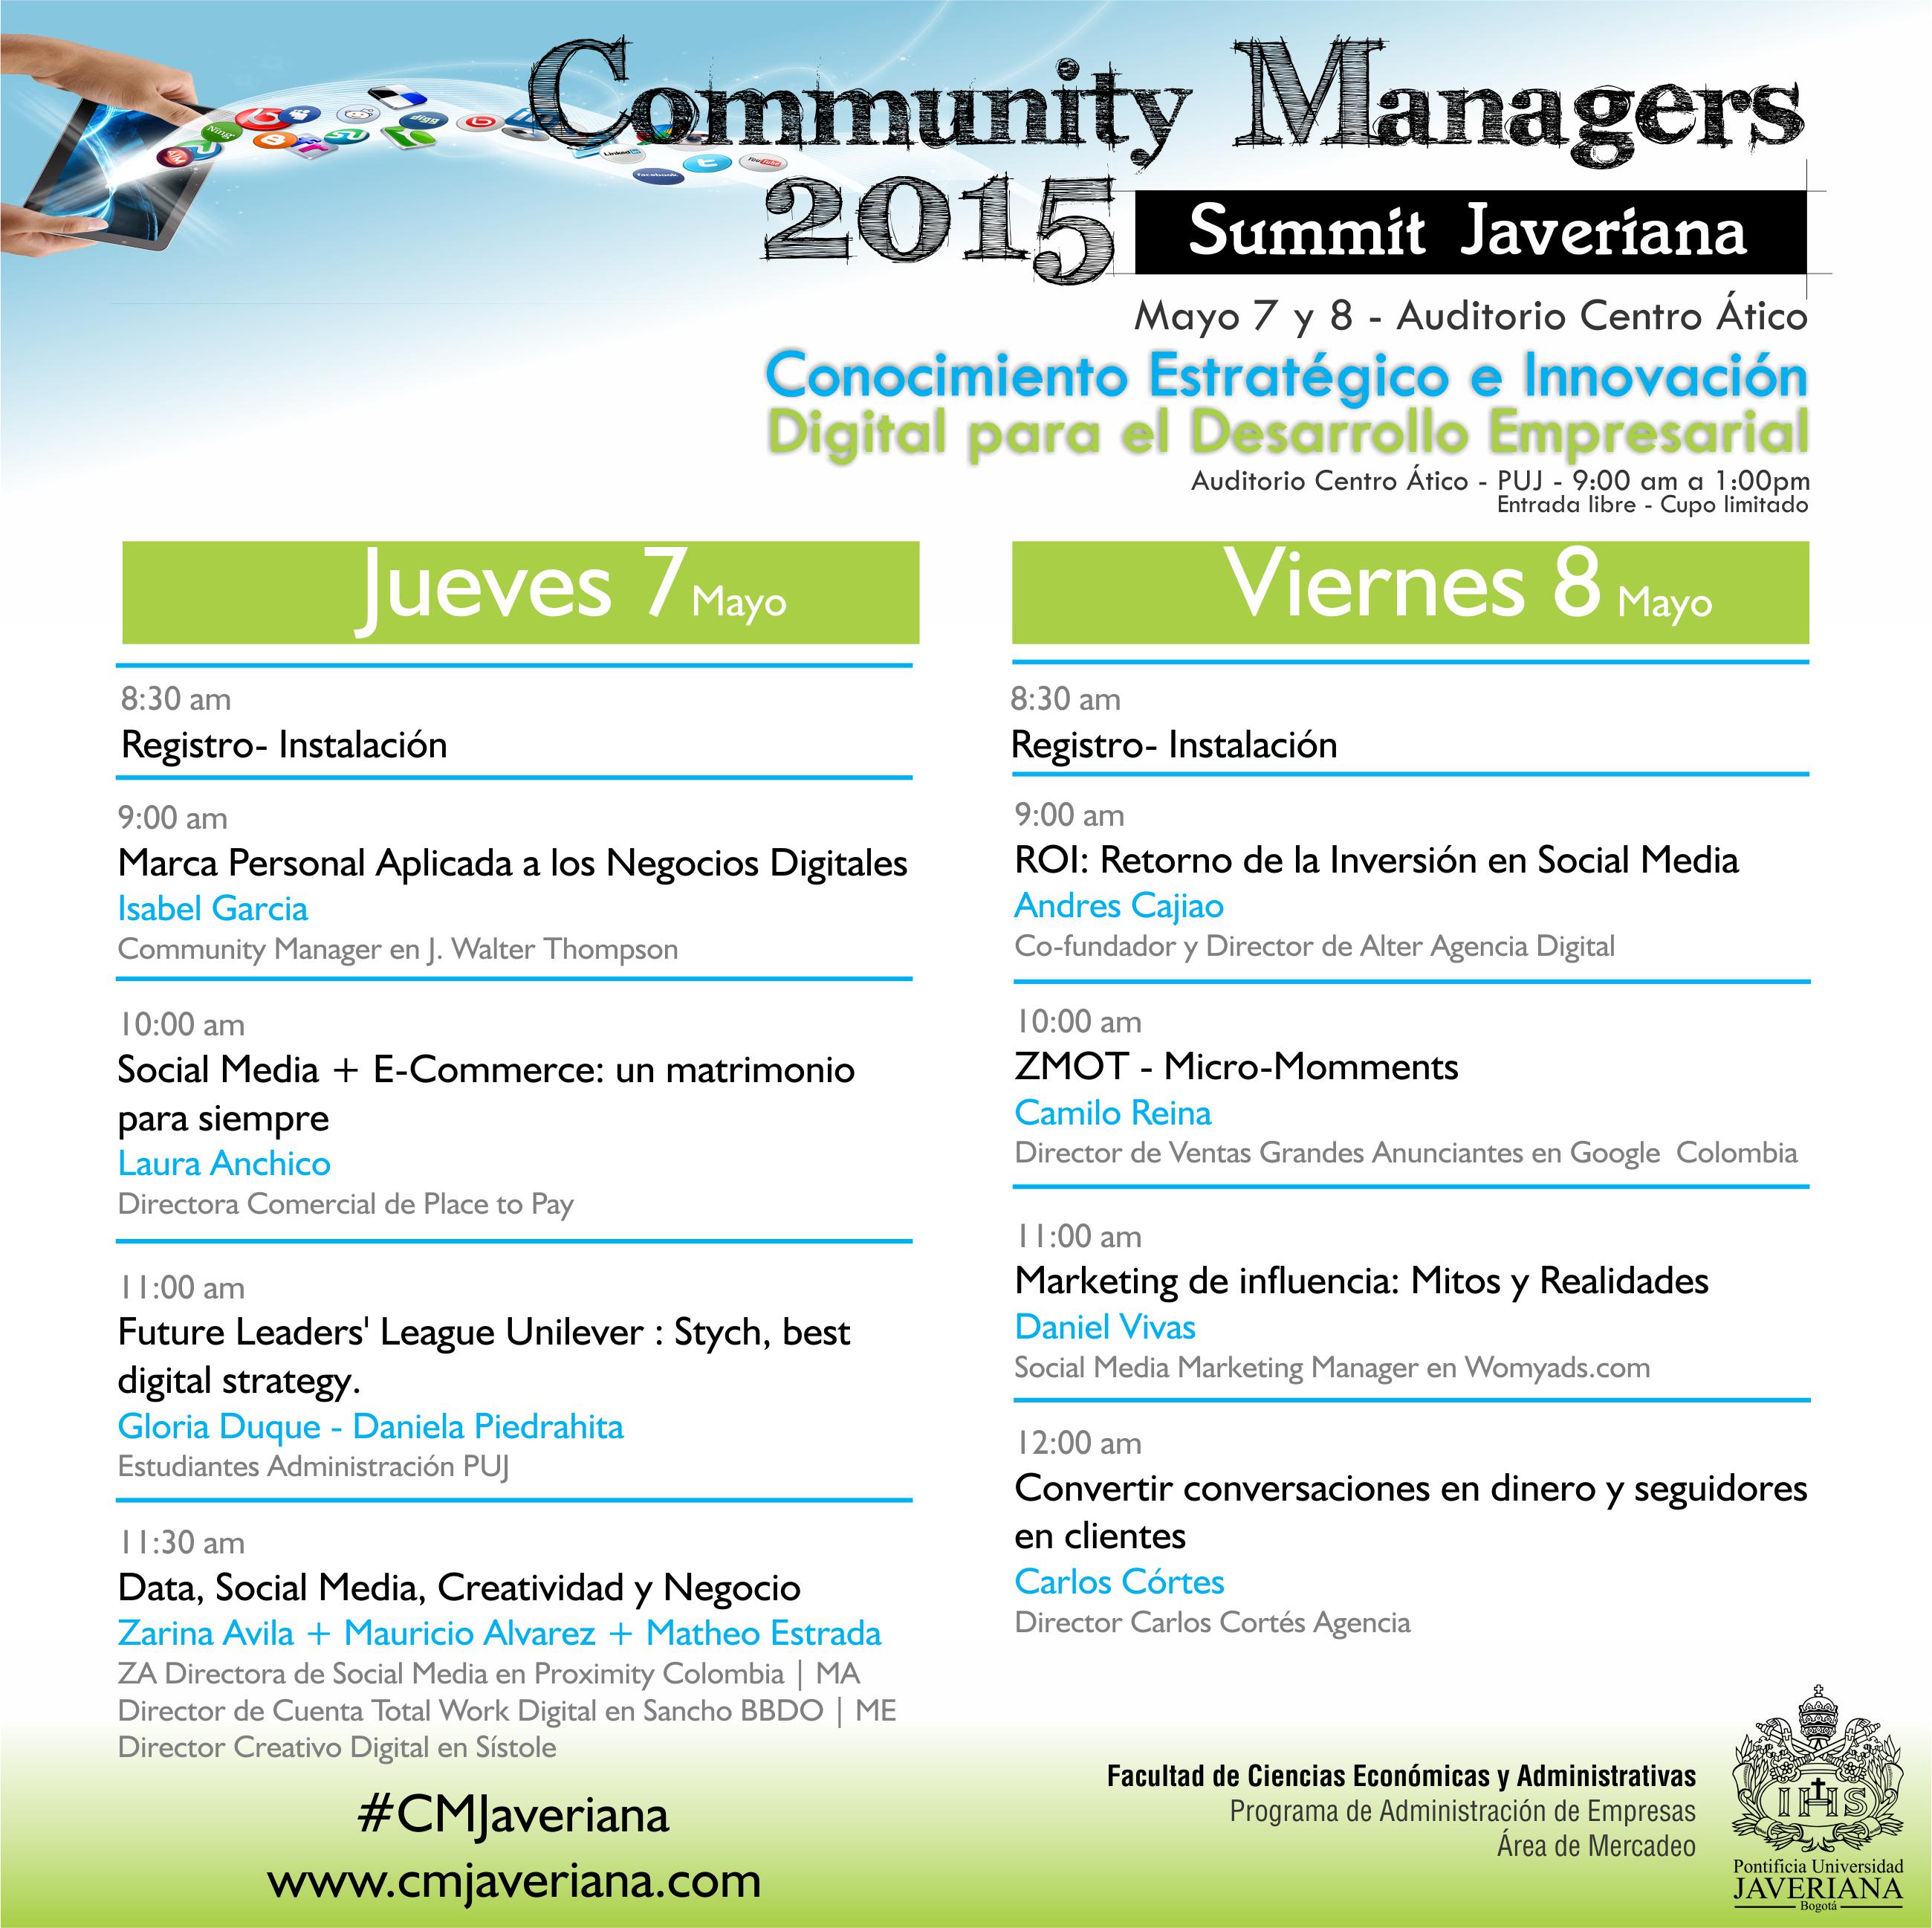 agenda-carlos-cortes-en-el-community-managers-summit-javeriana-2015